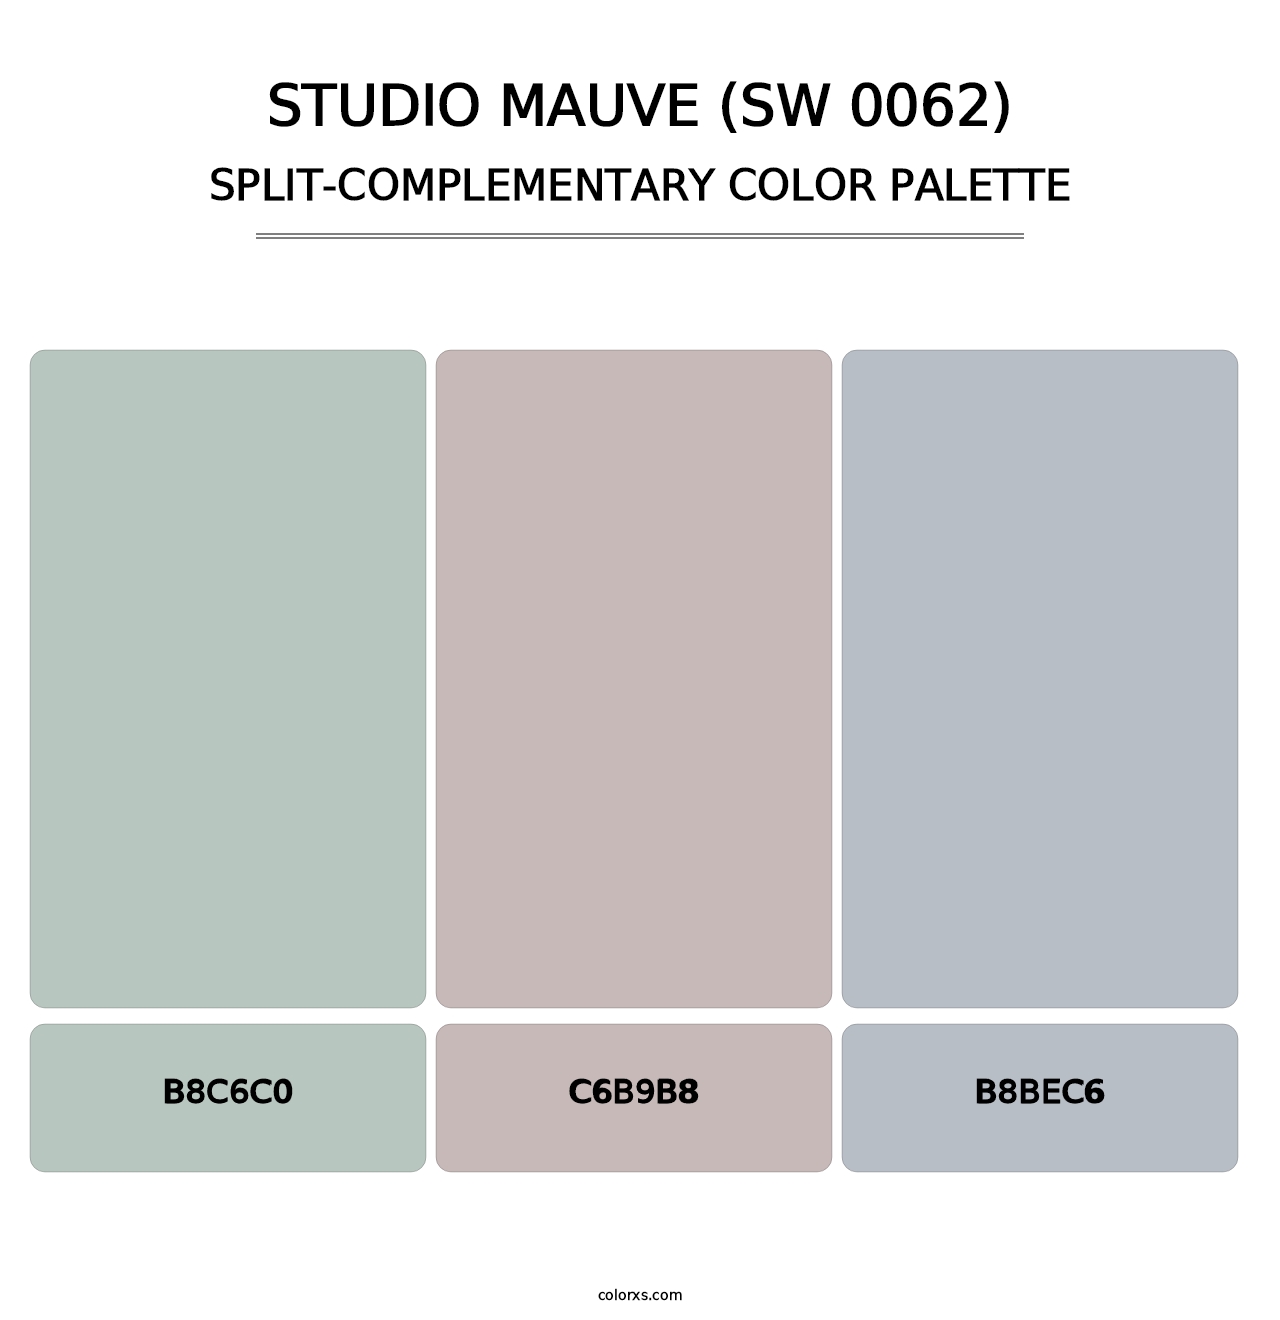 Studio Mauve (SW 0062) - Split-Complementary Color Palette